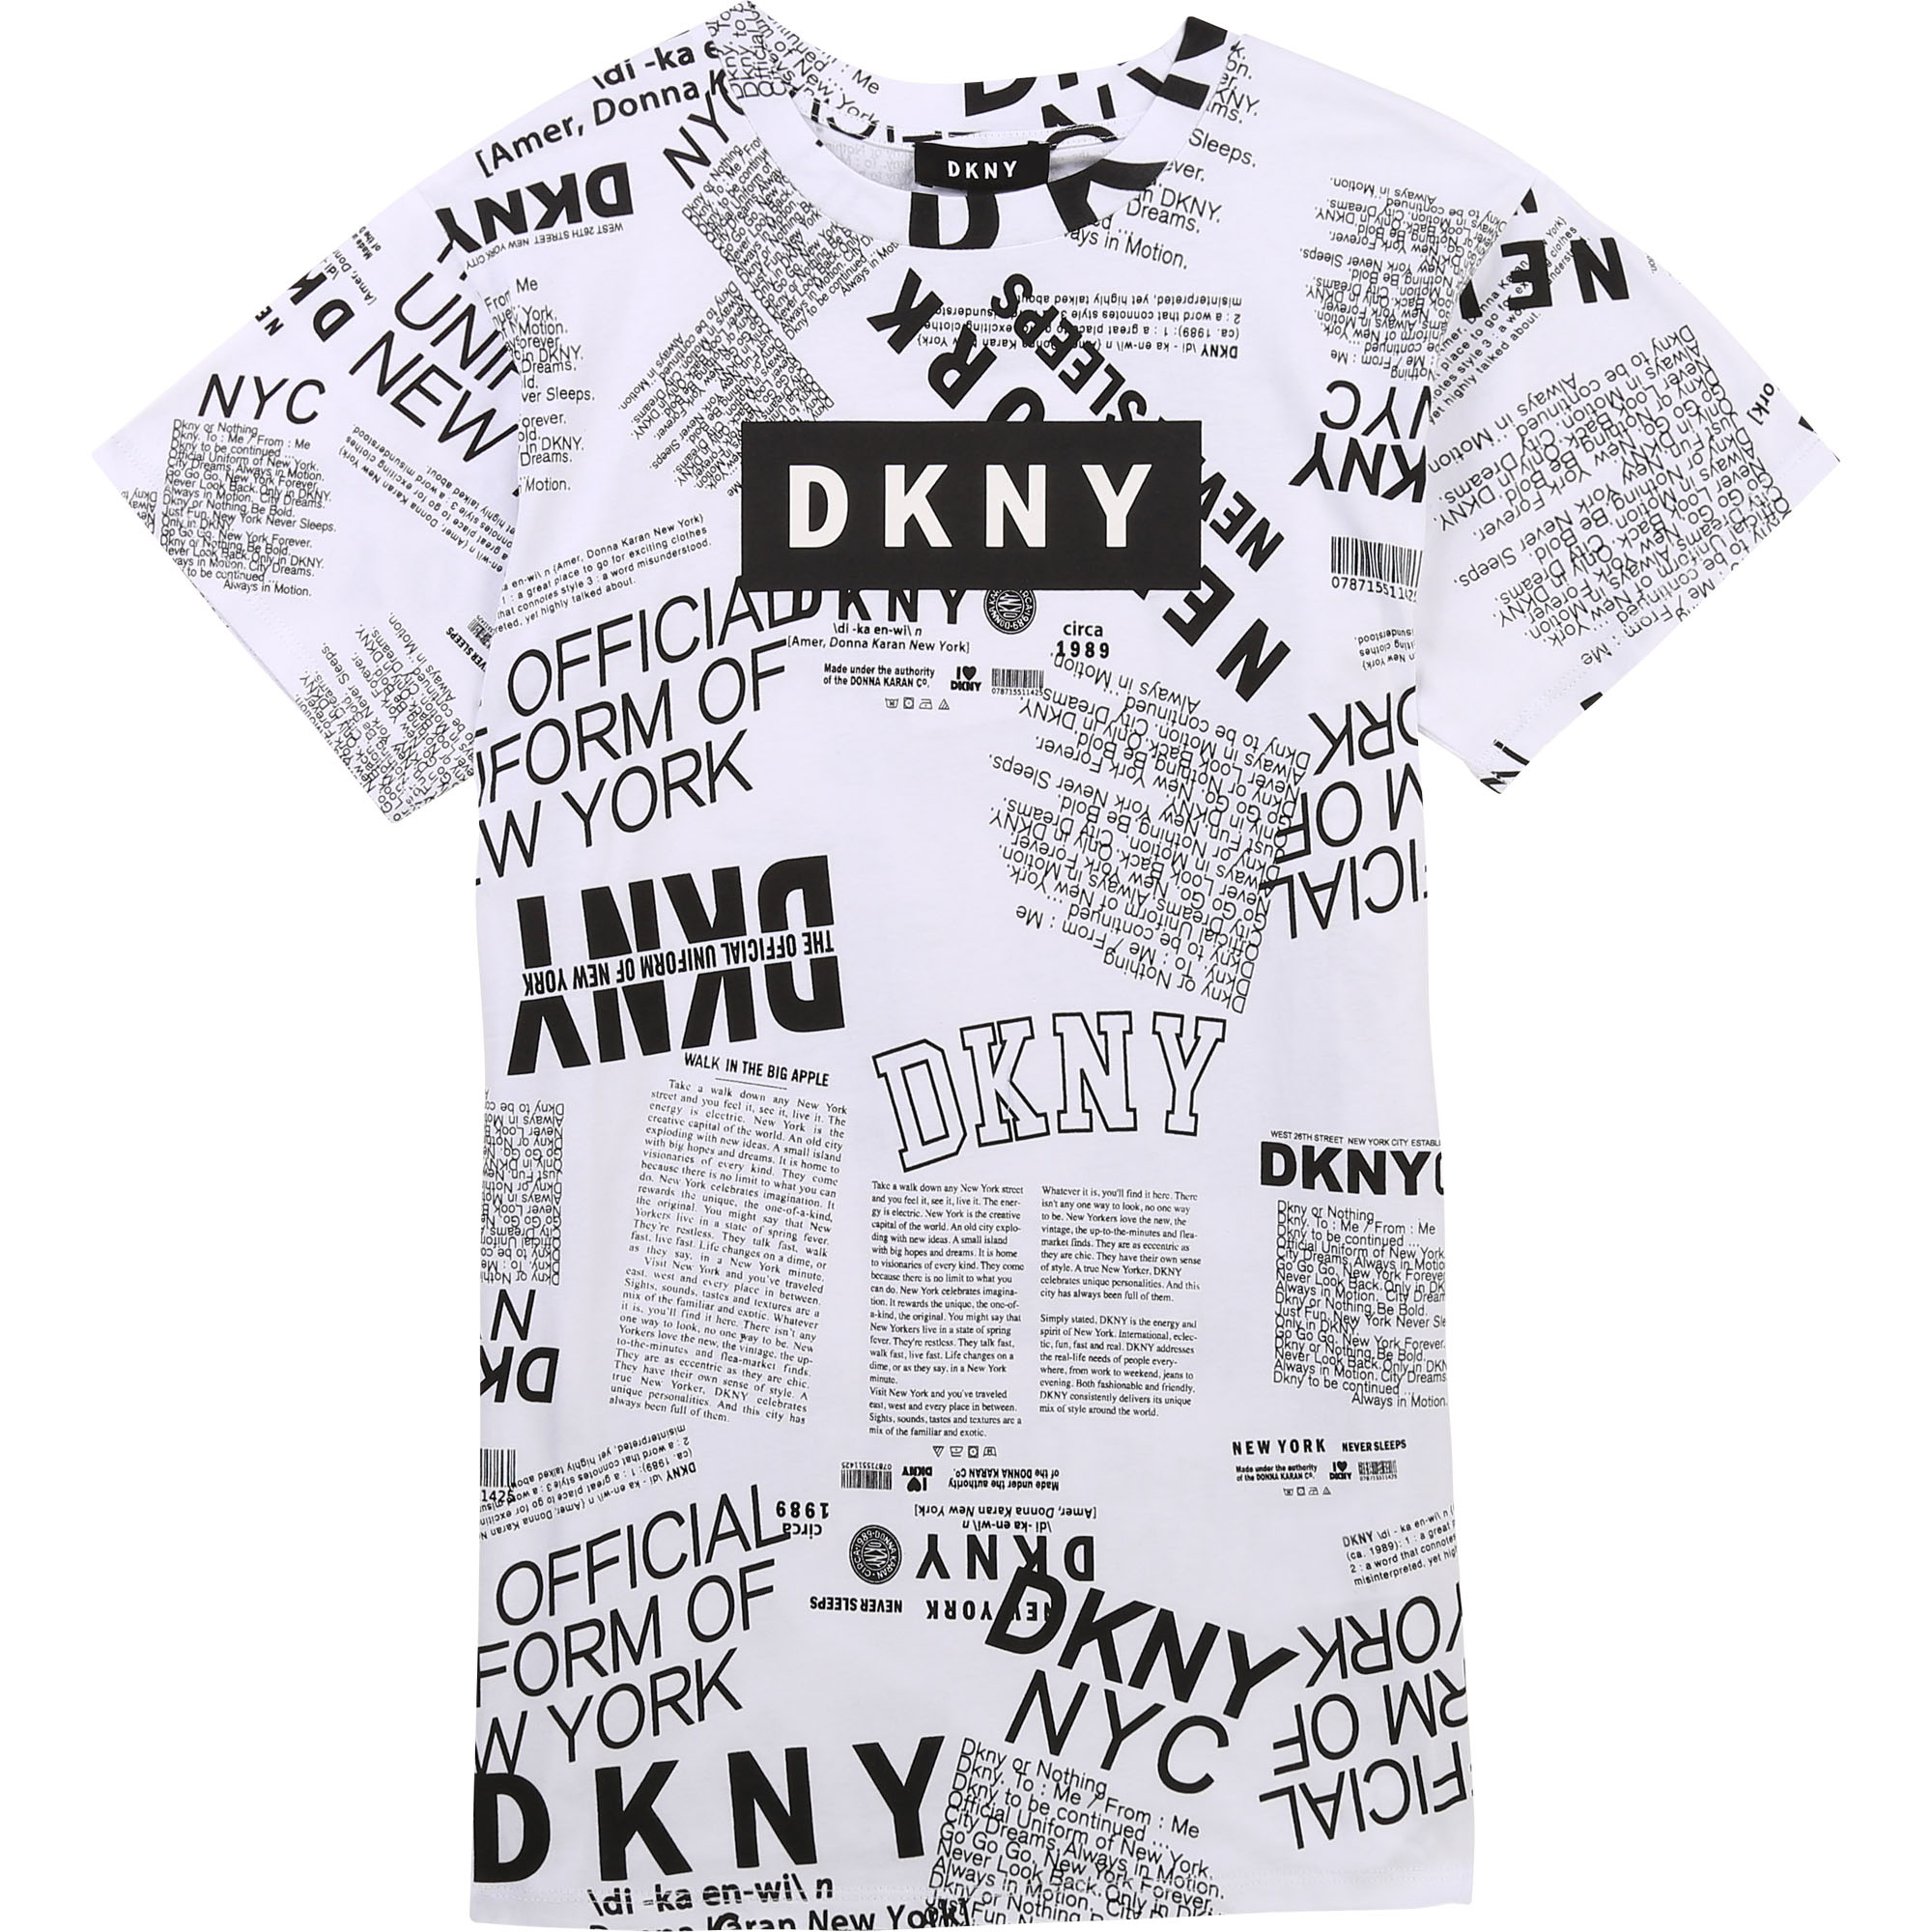 Short-sleeved printed dress DKNY for GIRL